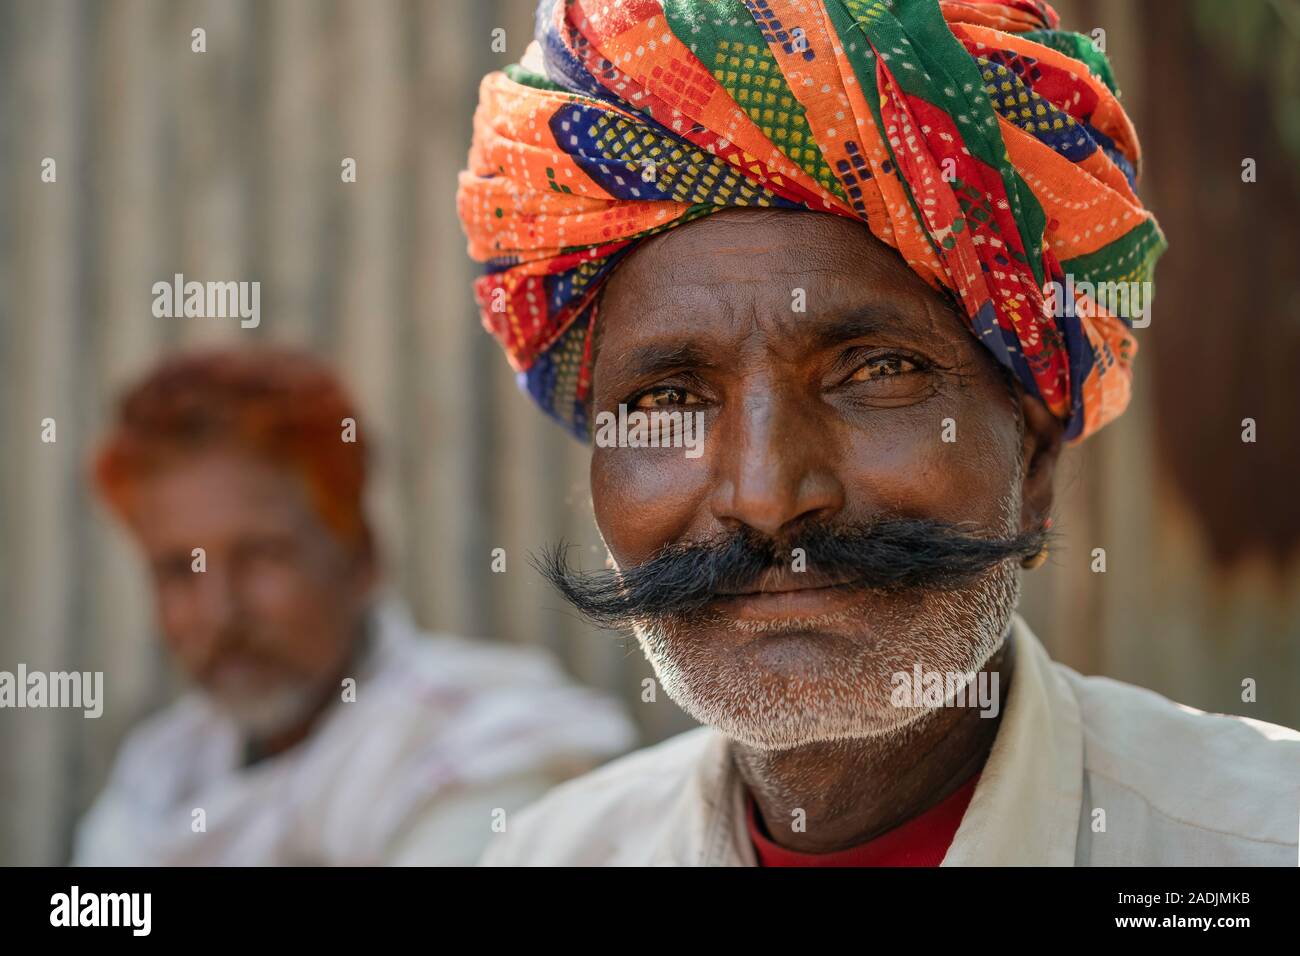 Musicien Rajput traditionnelle moustache sportives, chaume, et colorés turban sur summer day le 31 octobre 2019 à Pushkar, Rajasthan, Inde. Banque D'Images